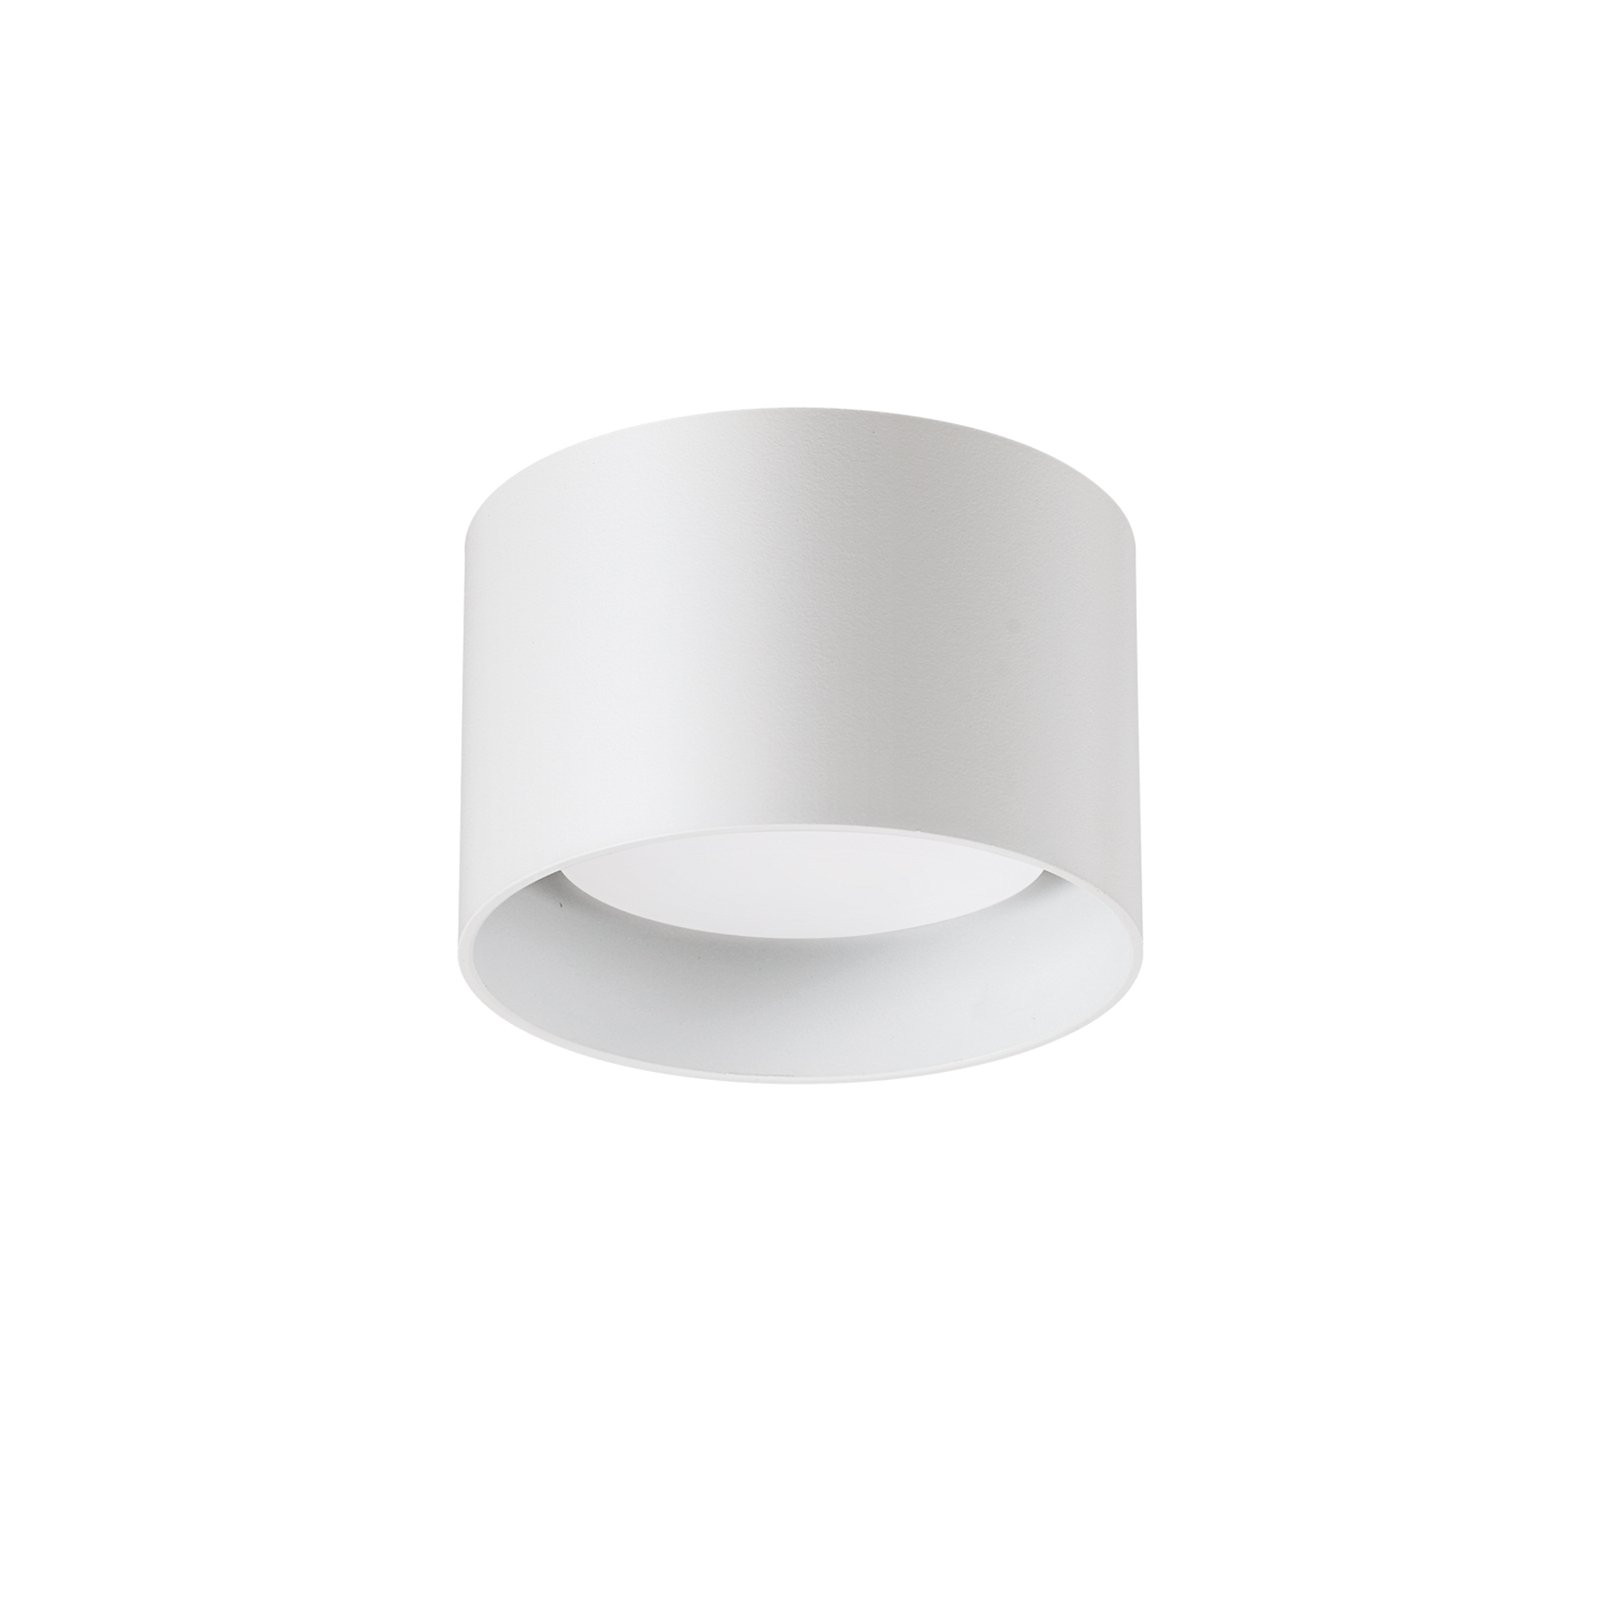 Ideal Lux Downlight Spike Round, weiß, Alu, Ø 10 cm